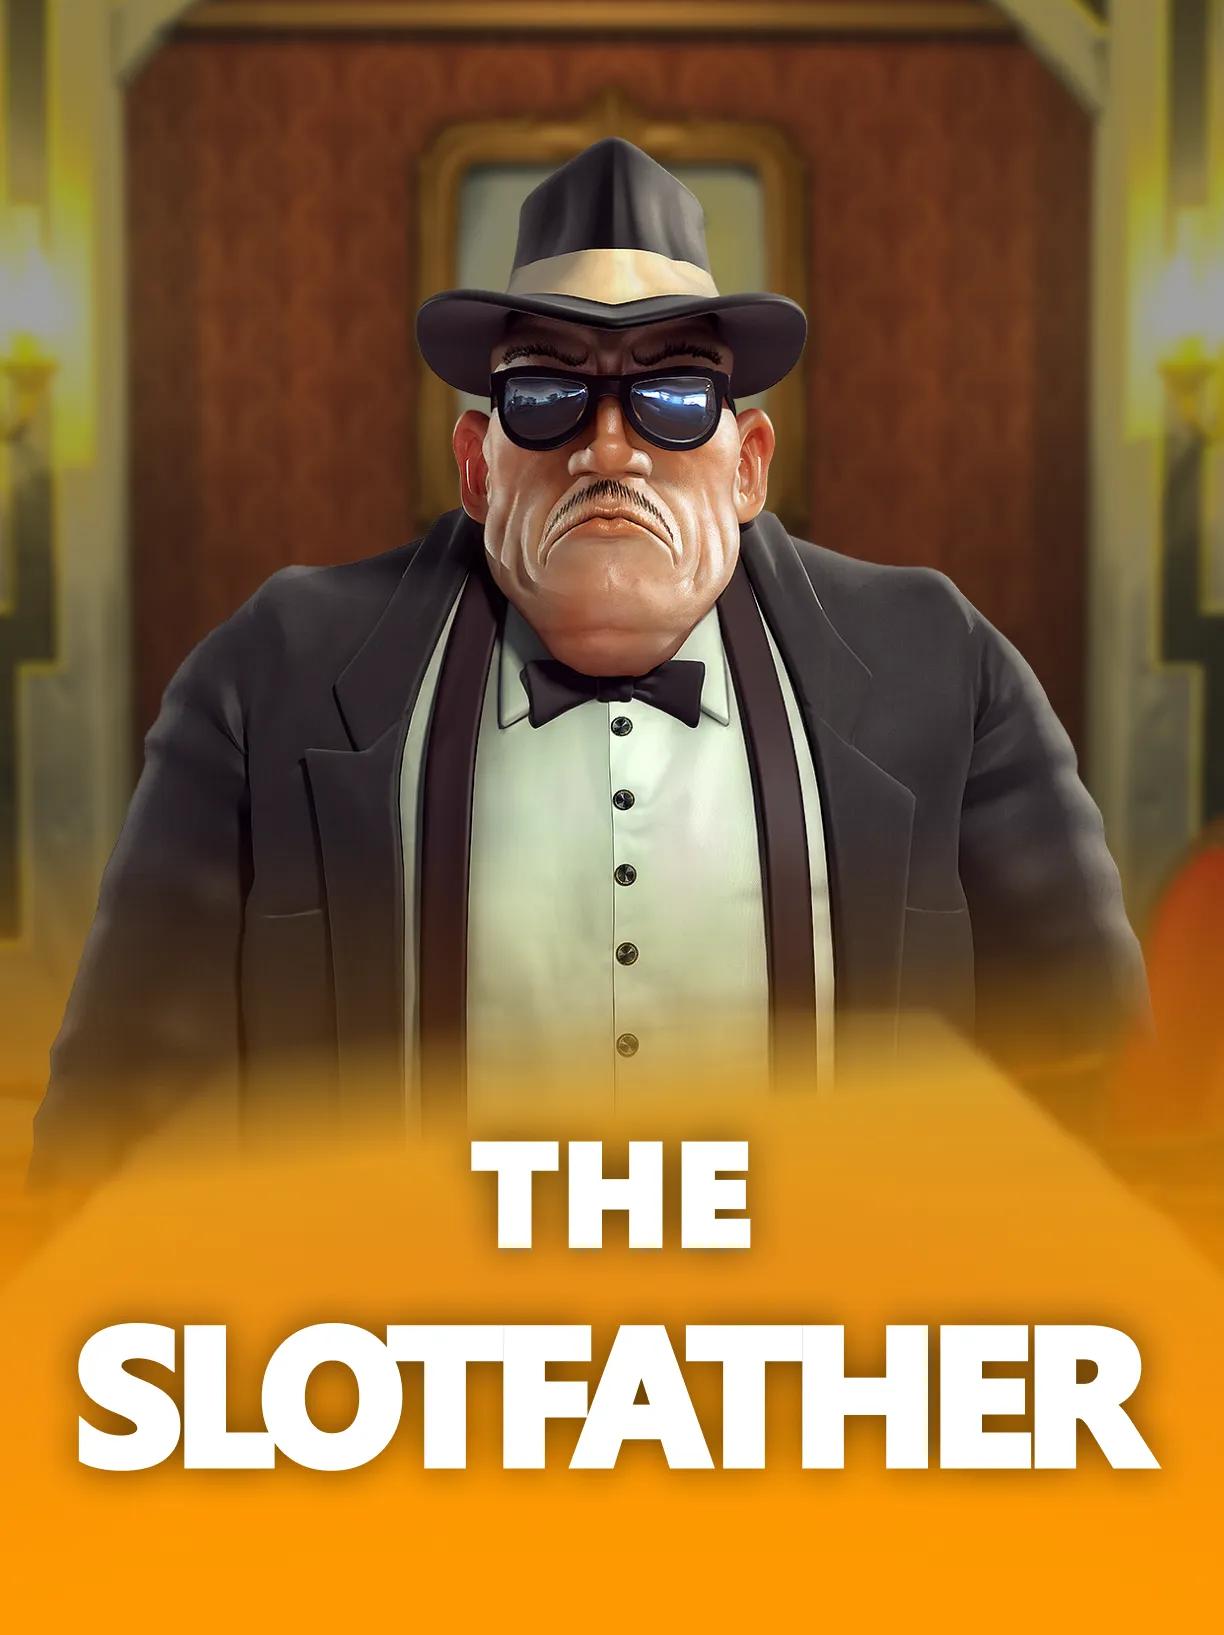 Slotfather NJP